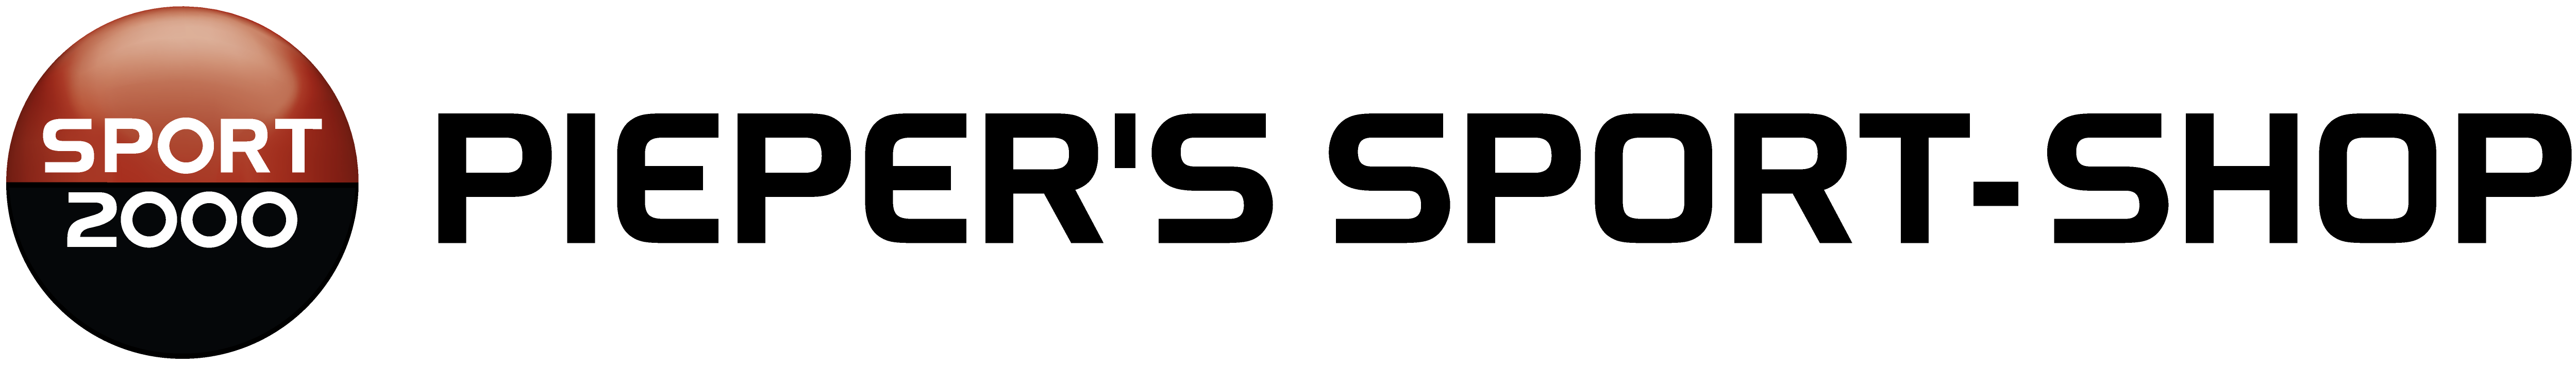 Klub für Kugelsport Münster e.V. Logo 2